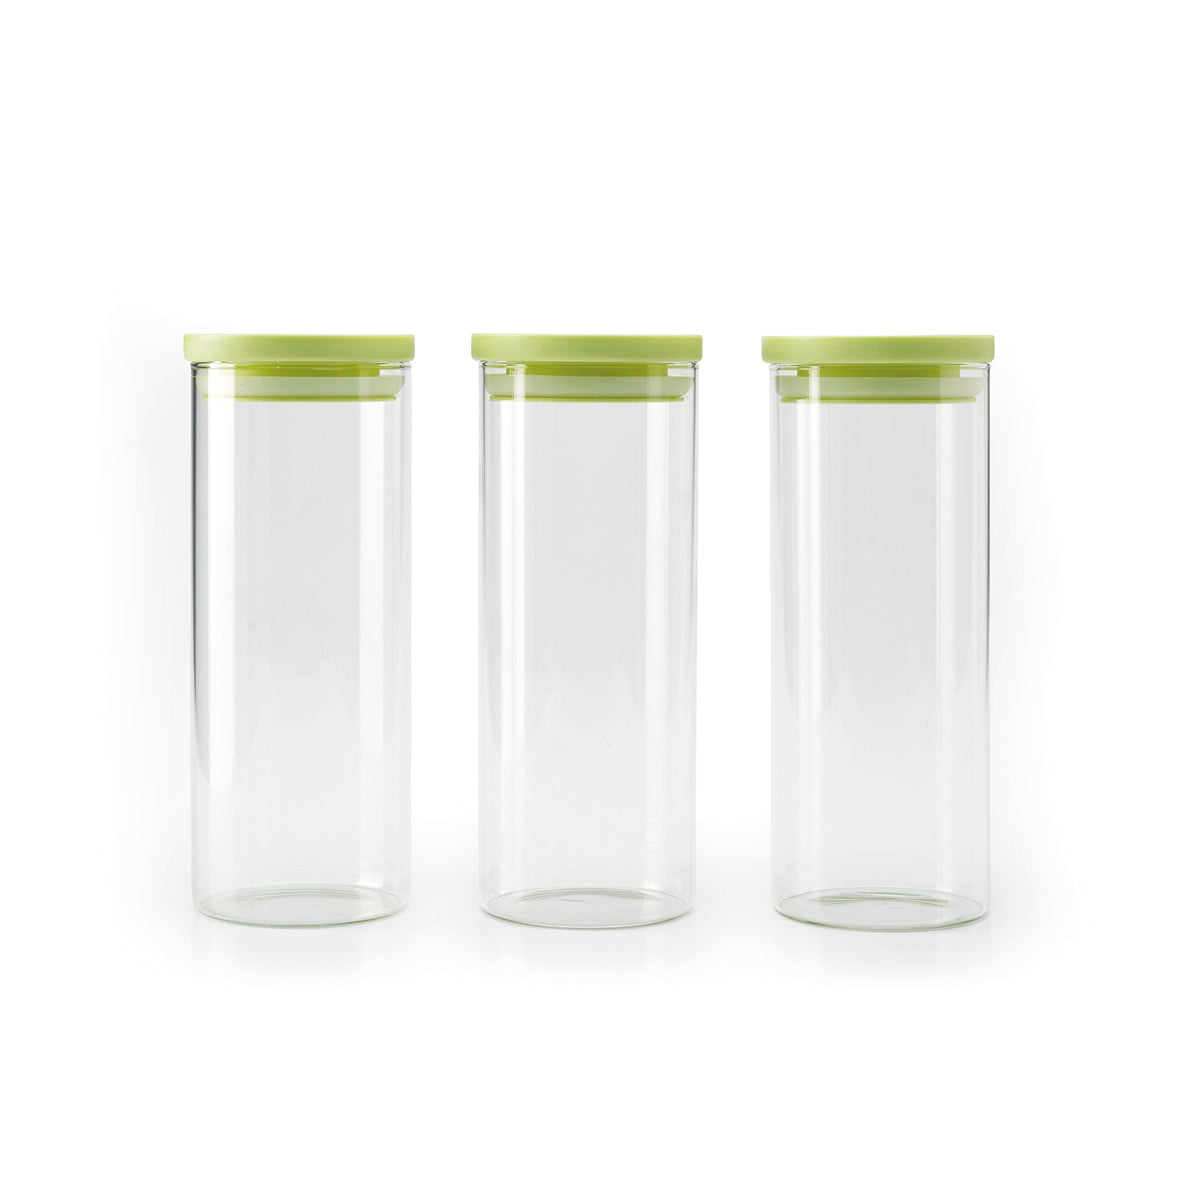 Set de 3 boîtes en verre avec couvercle en plastique – transparent et vert – 1.5l